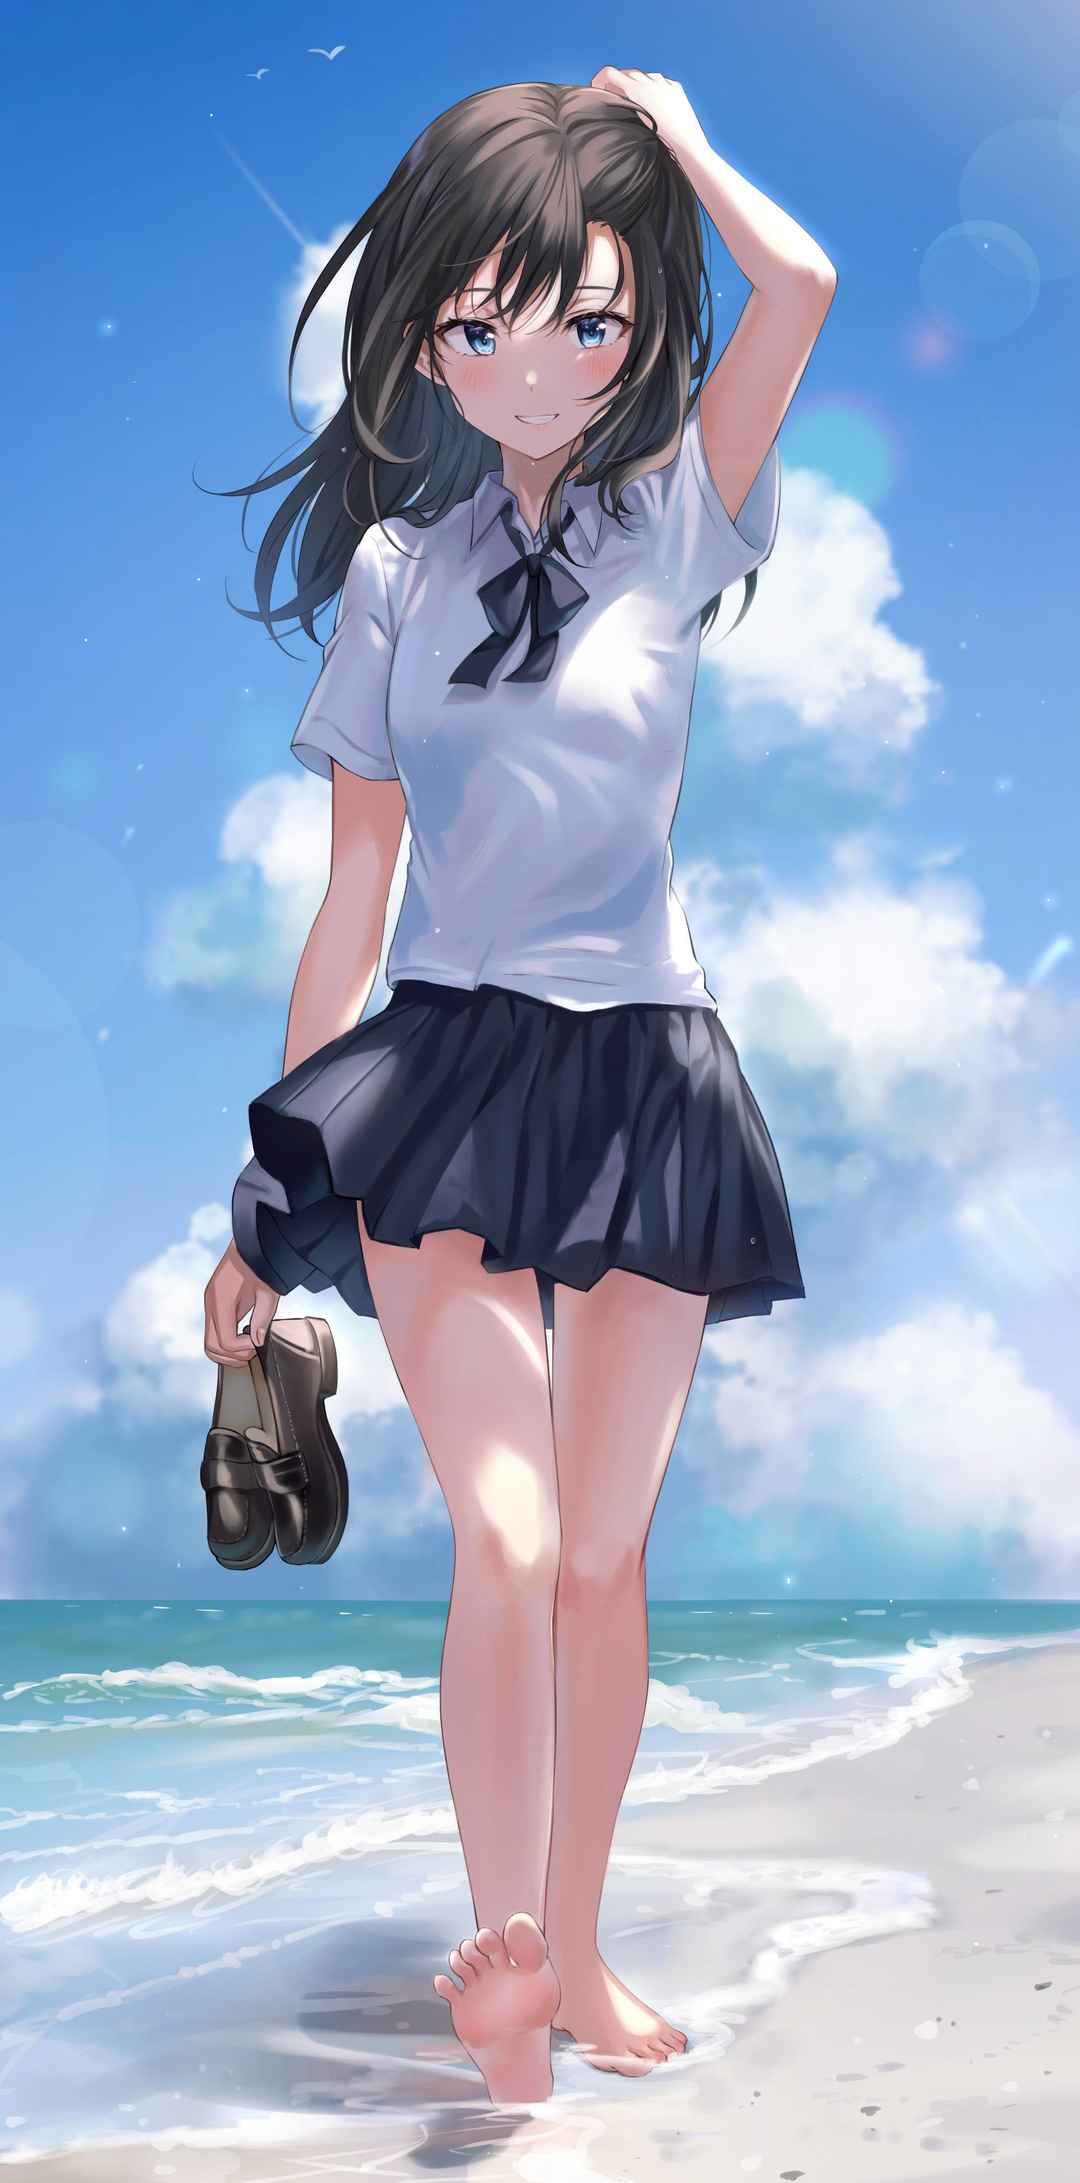 提着拖鞋右手拿烟火沙滩踏浪的日本动漫少女电脑壁纸-